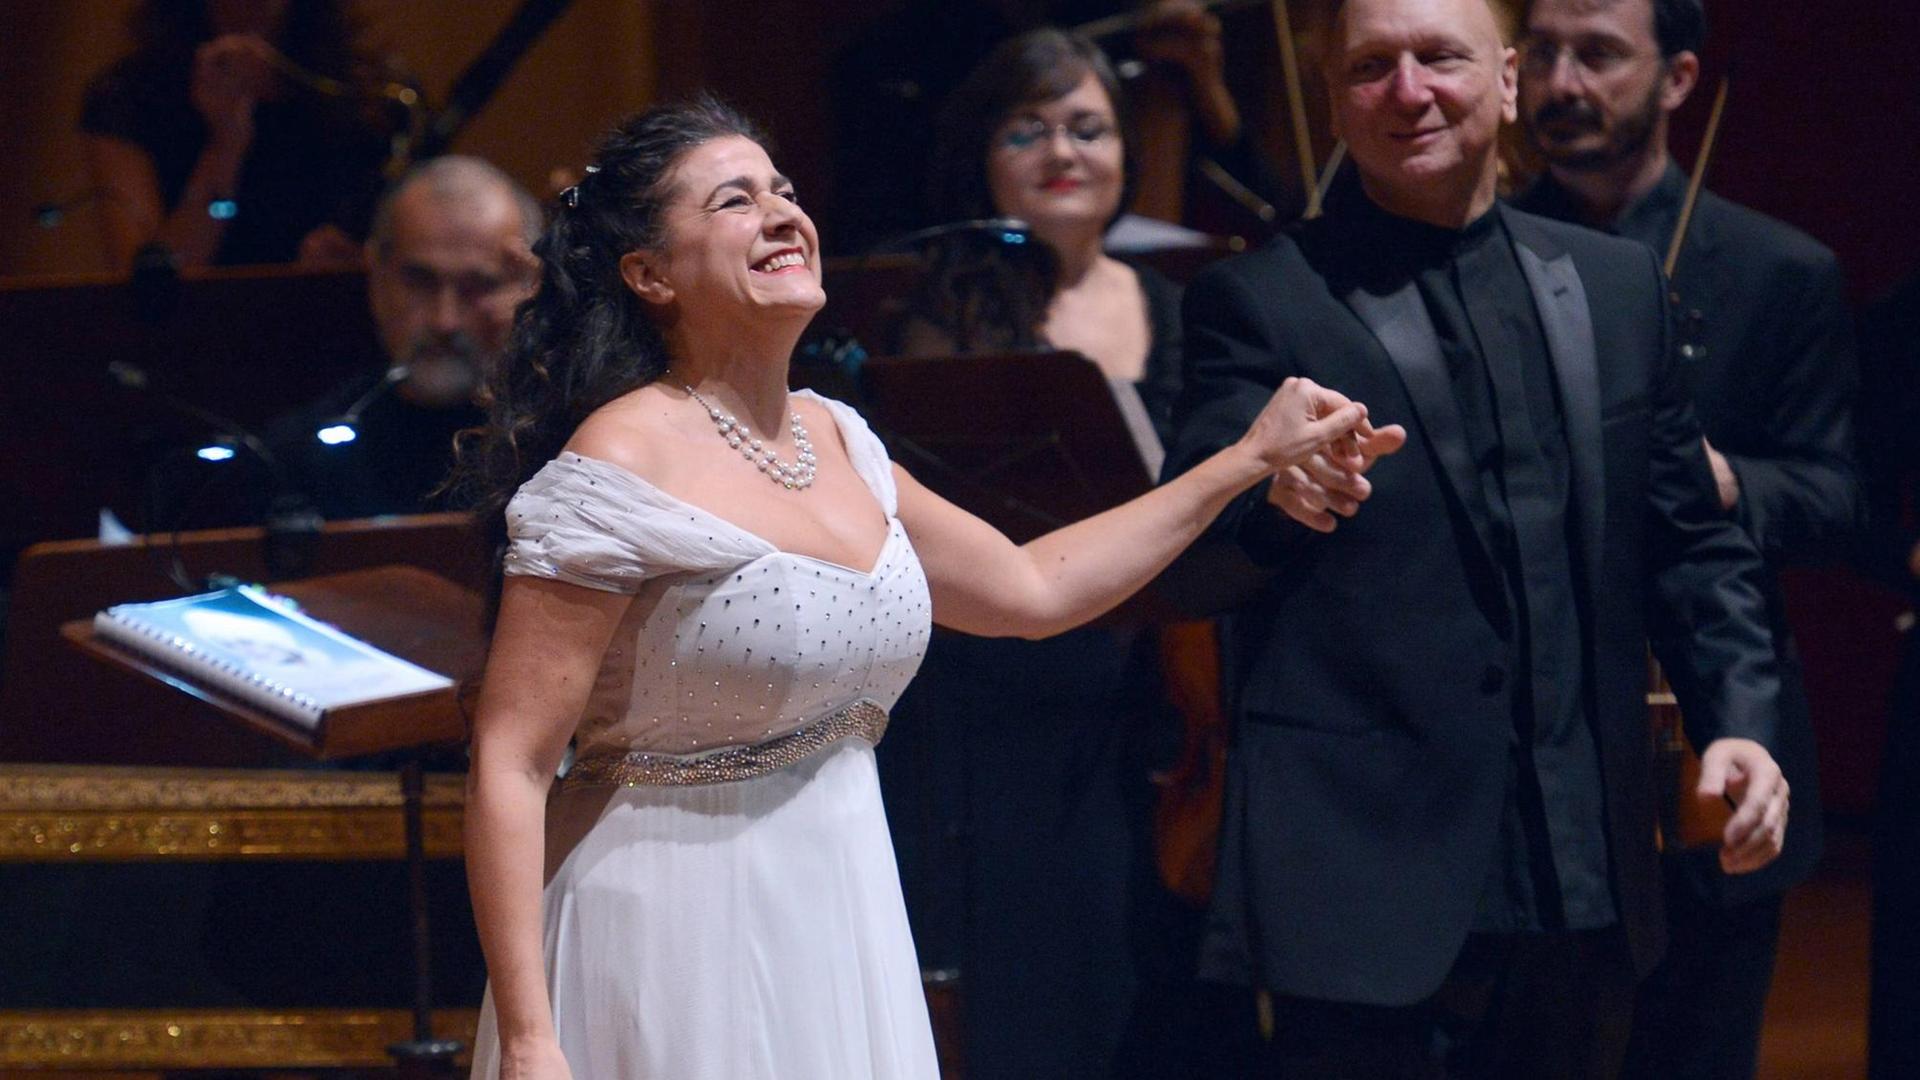 Ein Traum wird wahr: Cecilia Bartoli singt als erste Frau gemeinsam in der Sixtinischen Kapelle.